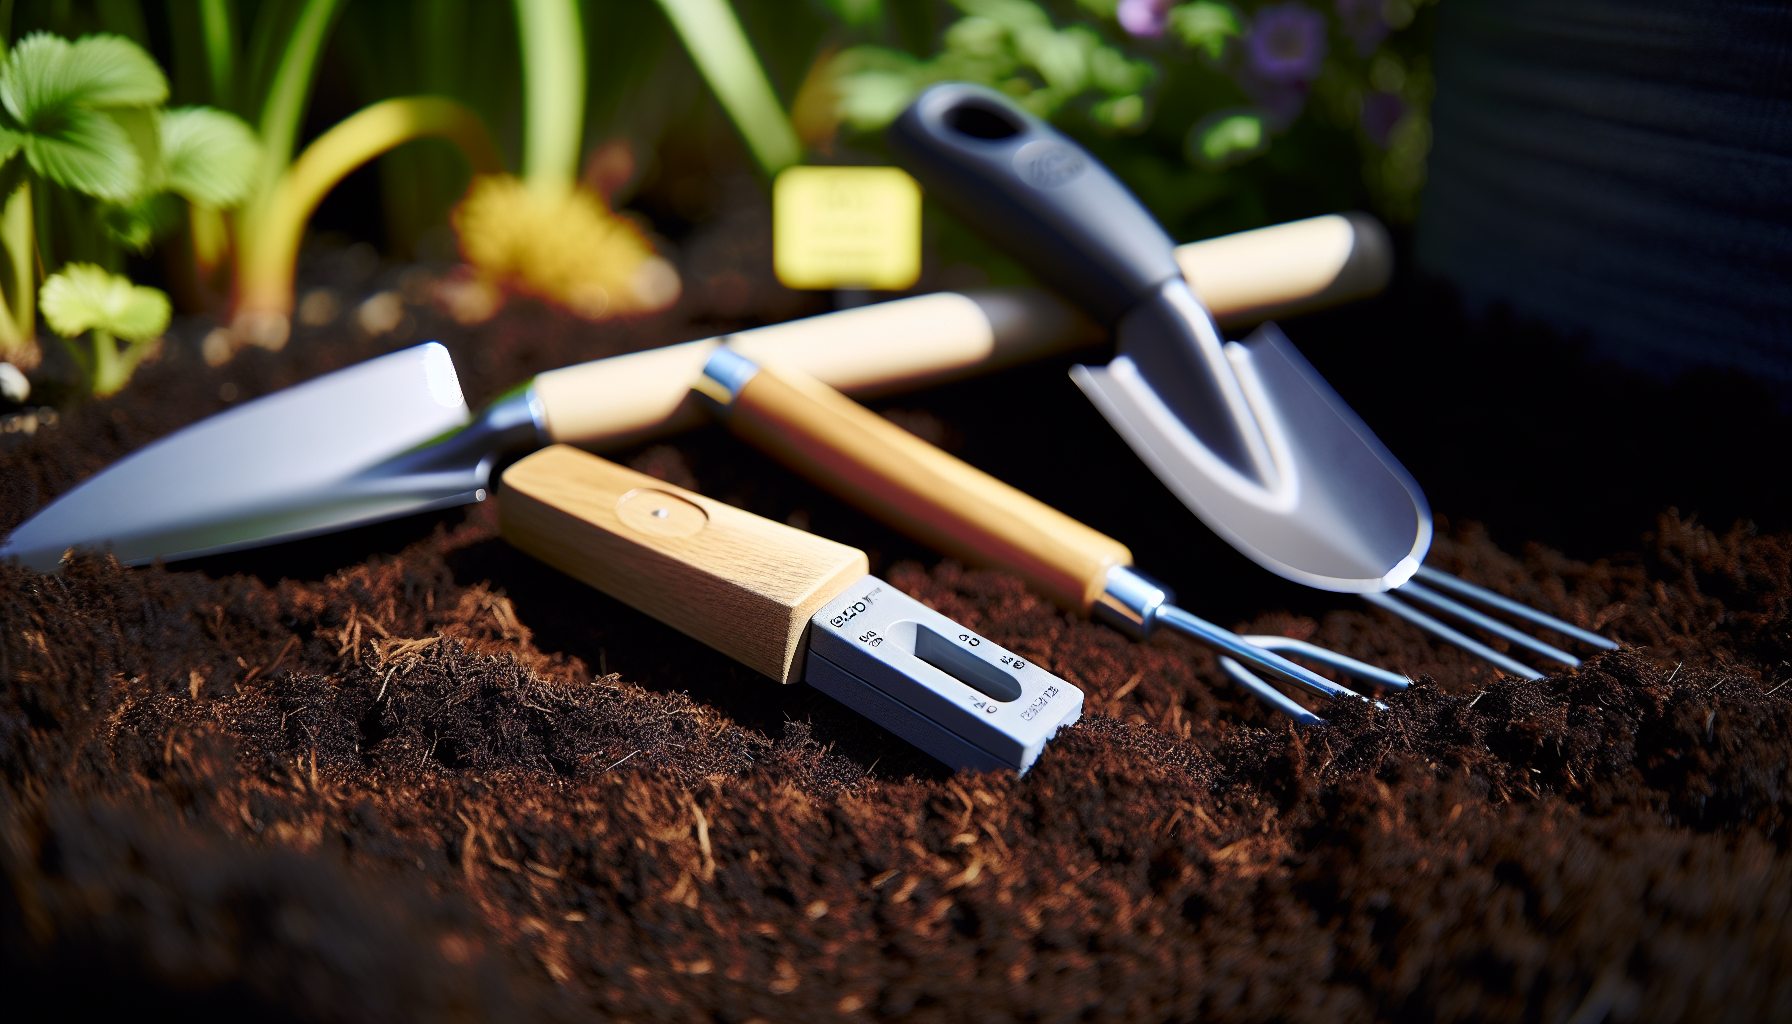 Soil test kit and gardening tools for soil preparation